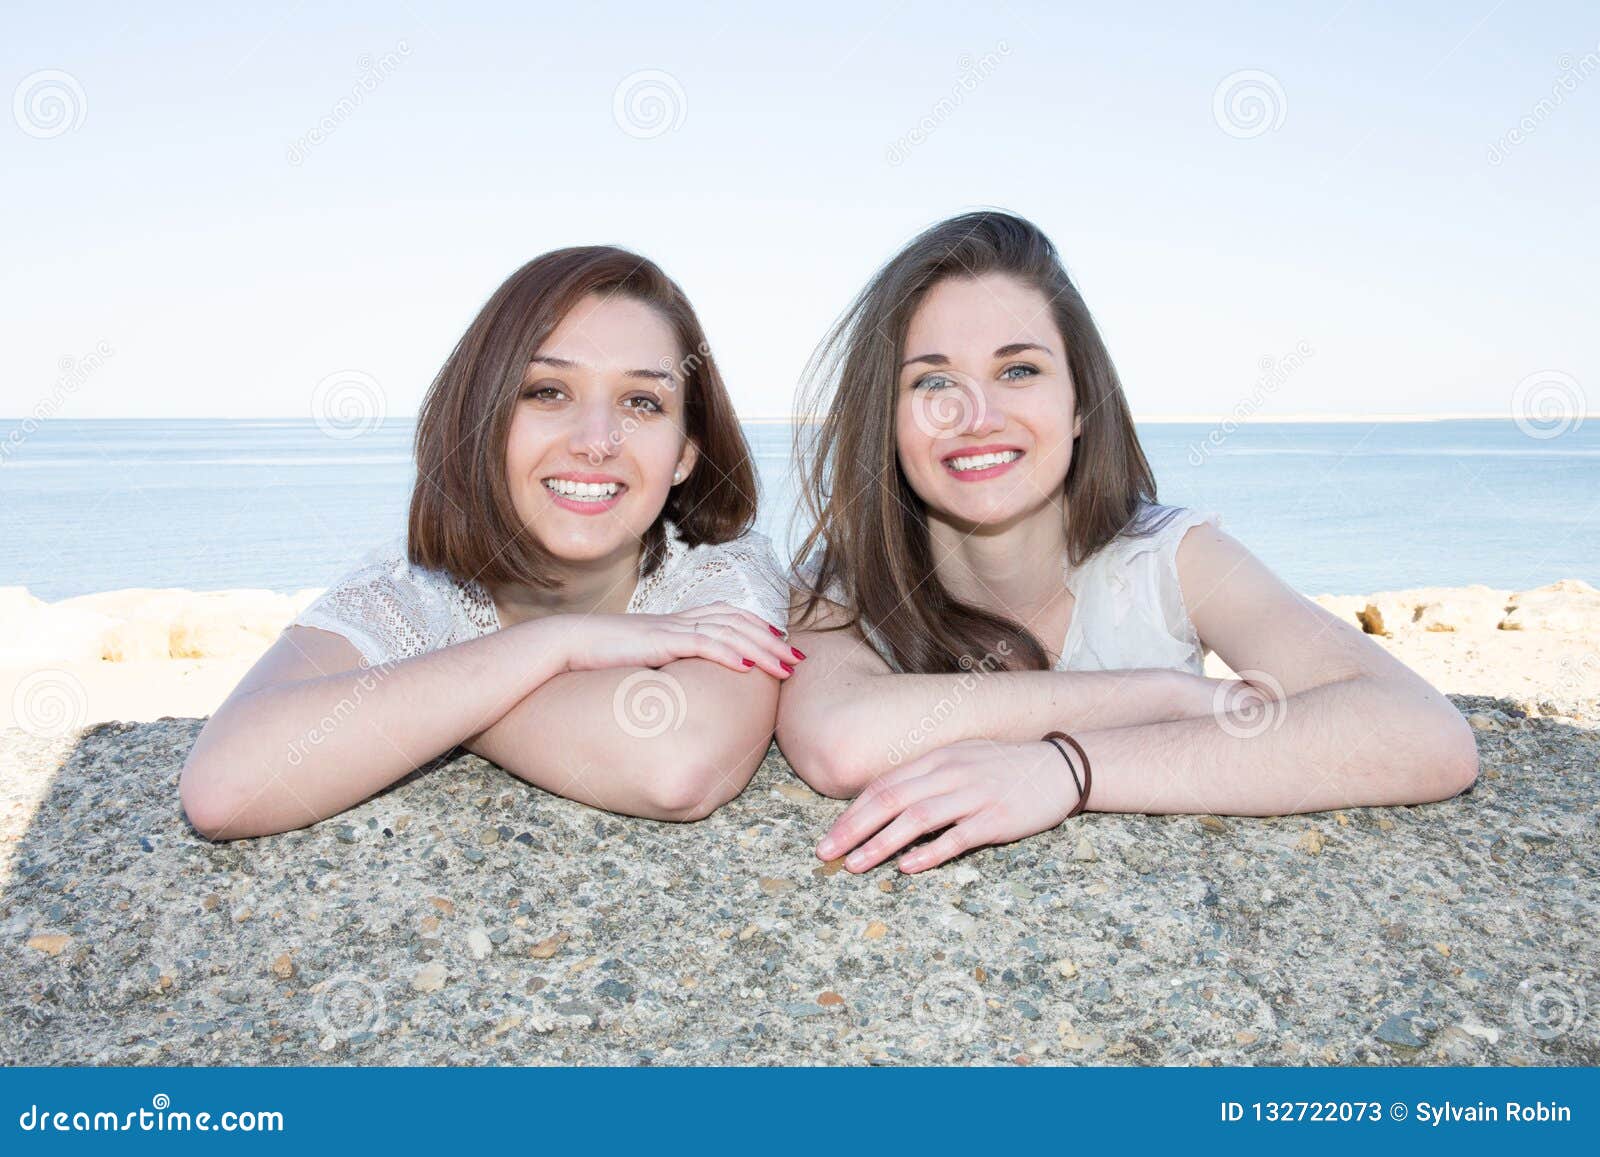 Lesbians At The Beach